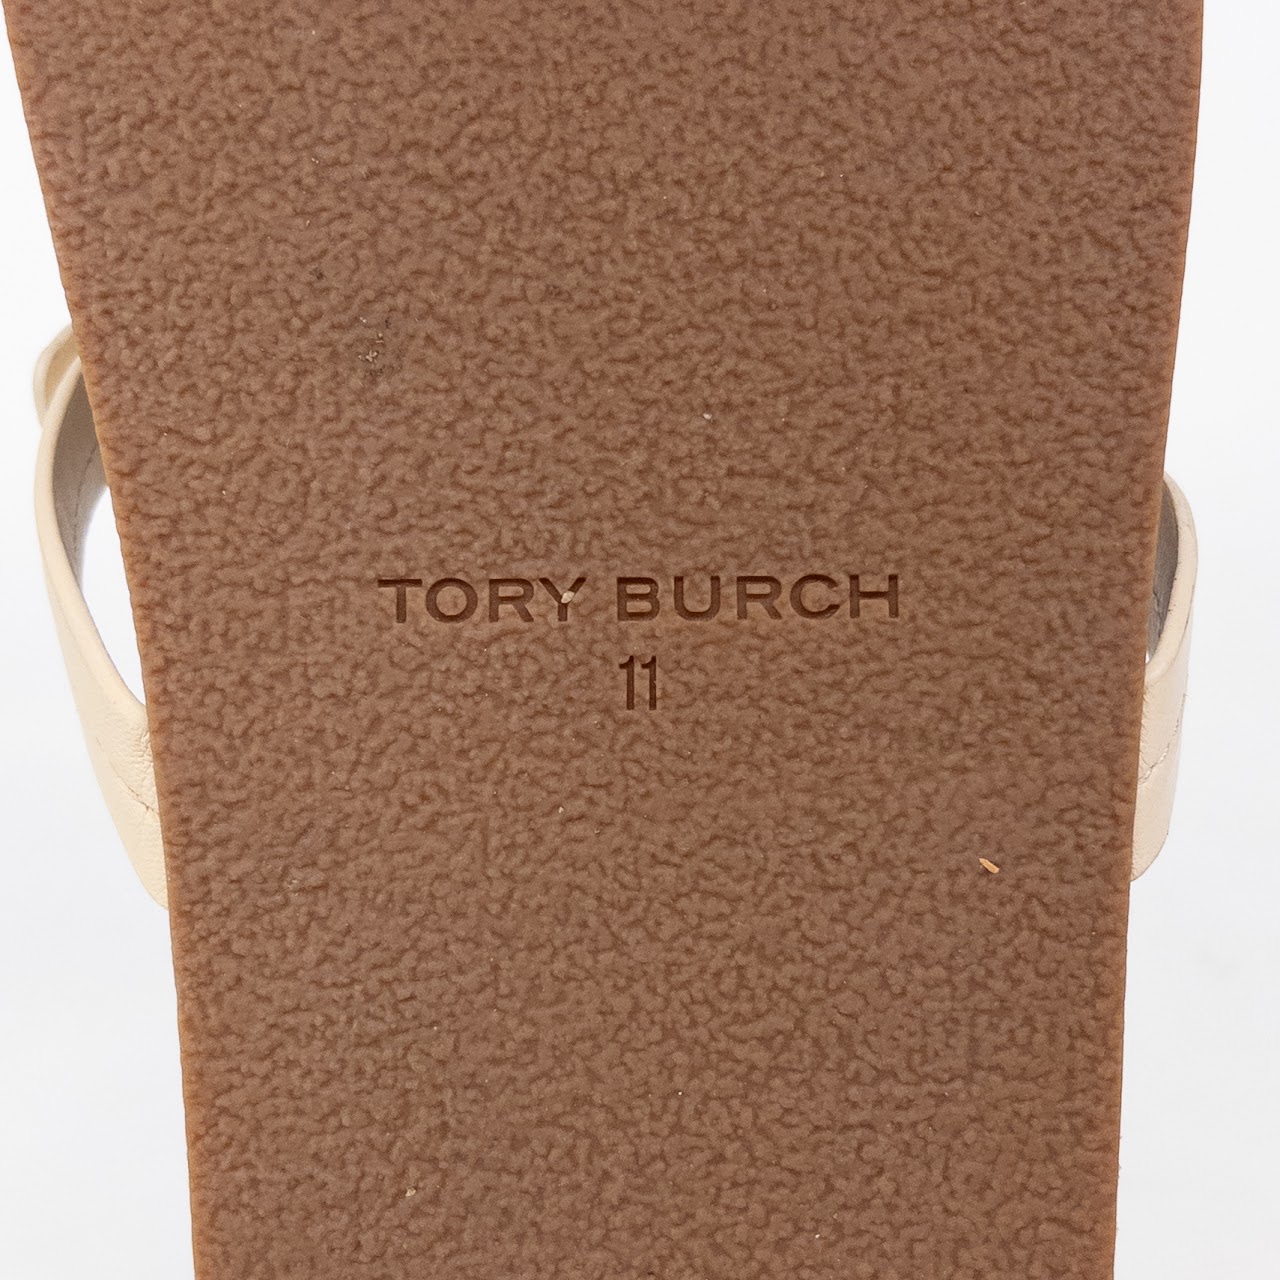 Tory Burch Miller Cloud Cork Sandals